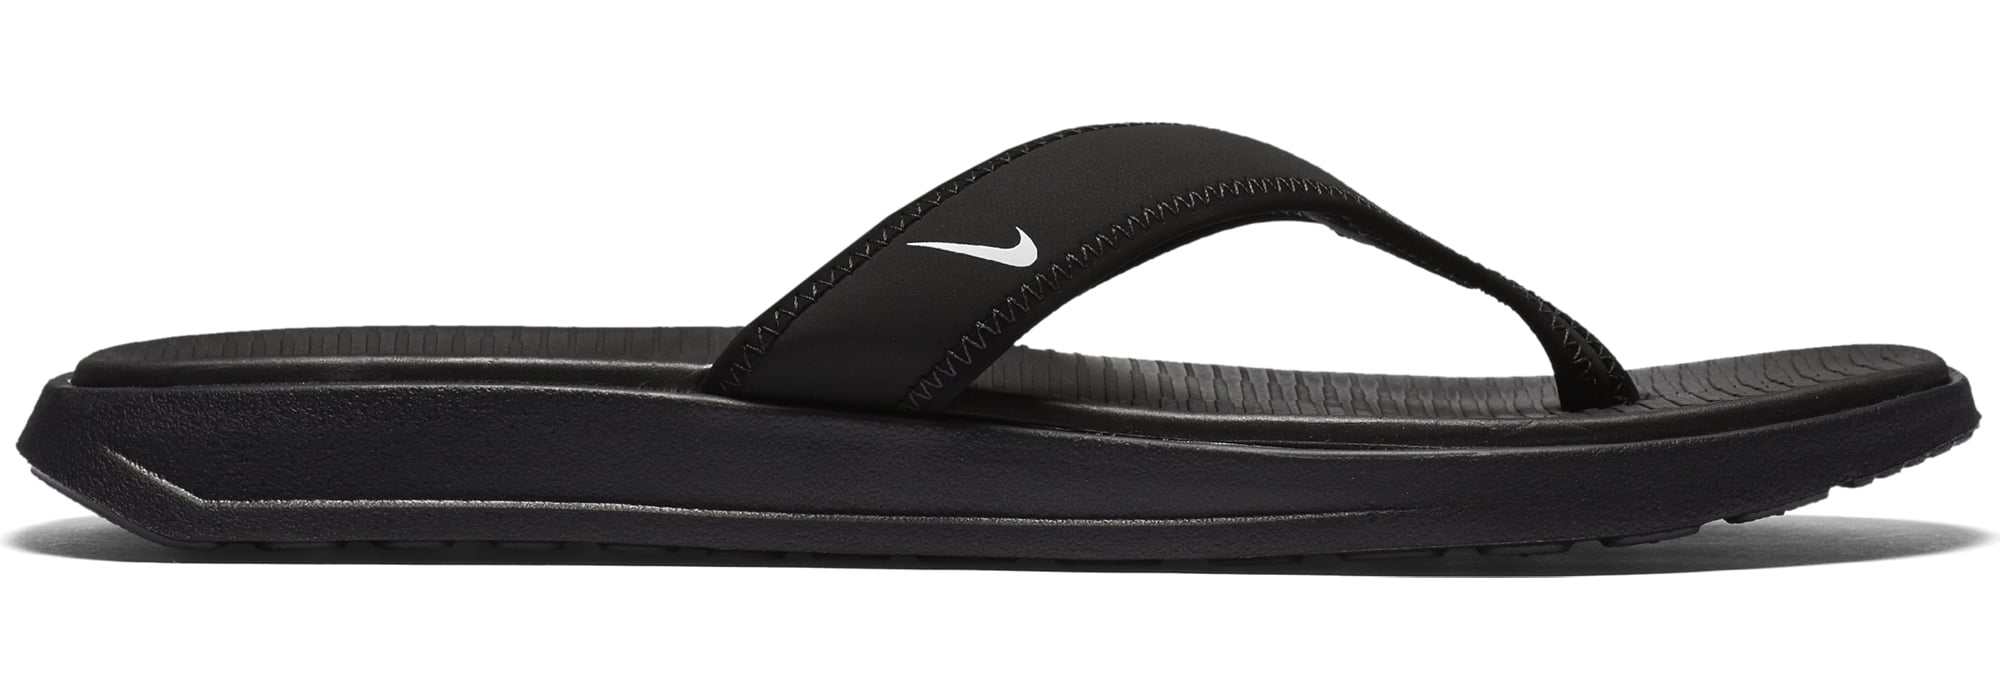 Nike Men's Ultra Celso Thong Sandal 882691 002 (Black/White, 11 D(M) US) 